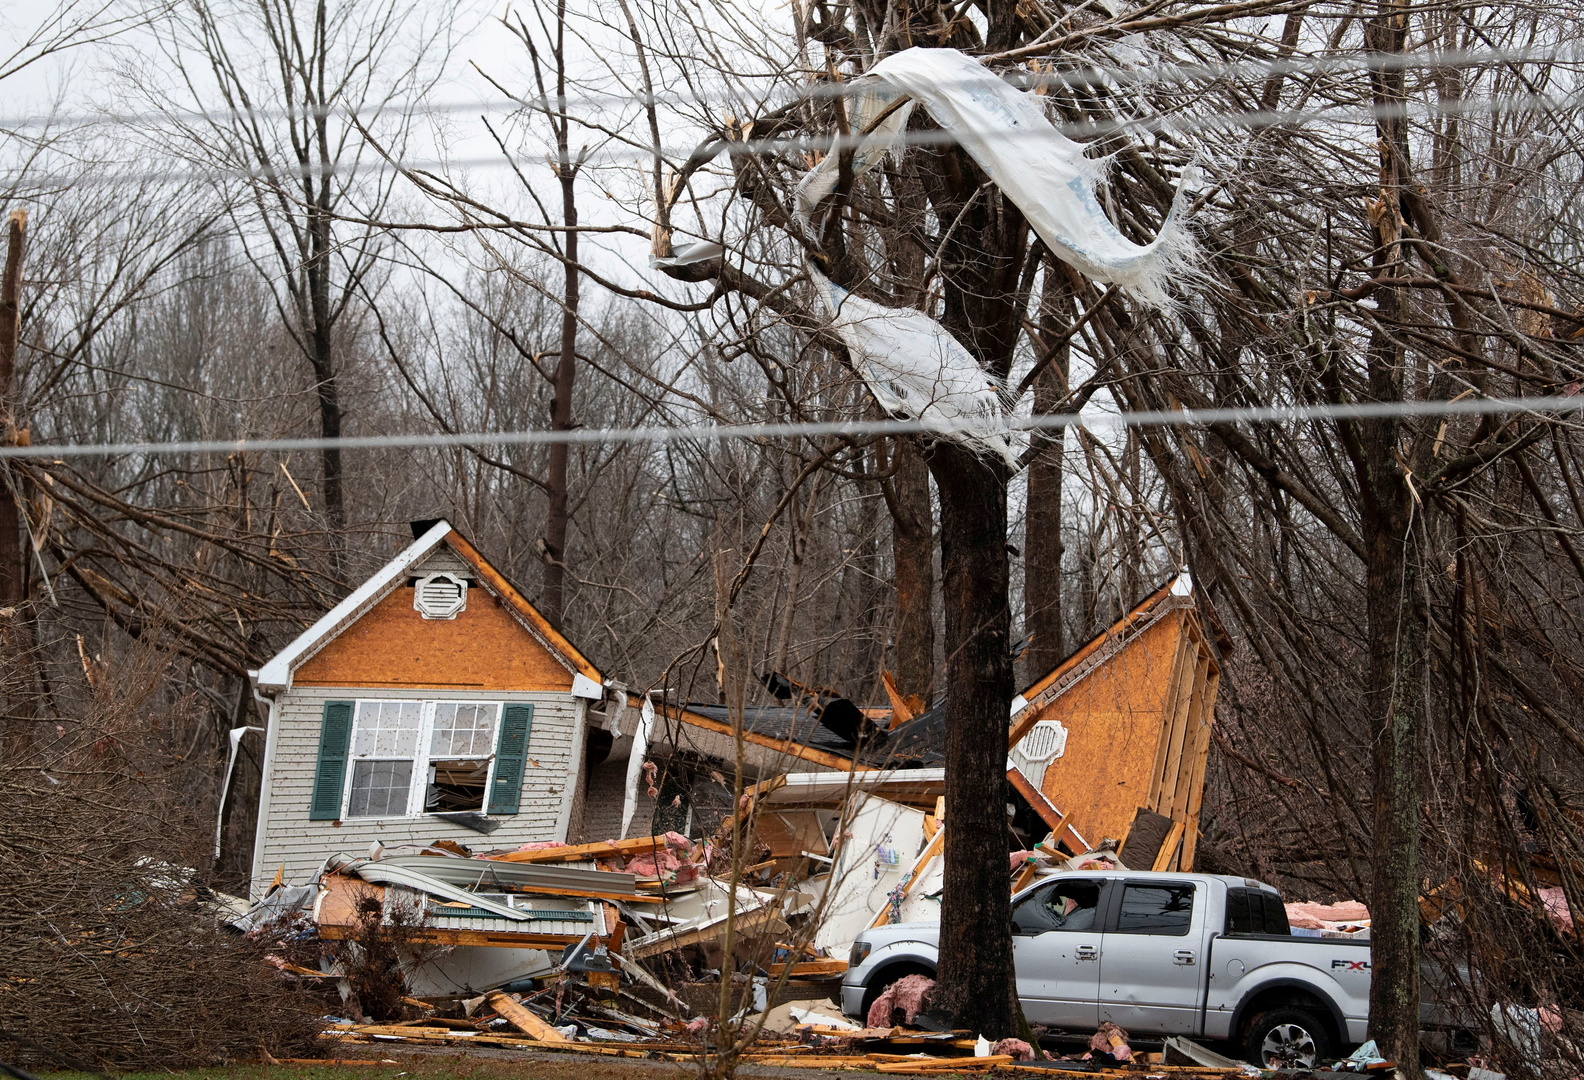 «Inimaginable tragédie» : au moins 83 morts dans une série de tornades aux Etats-Unis